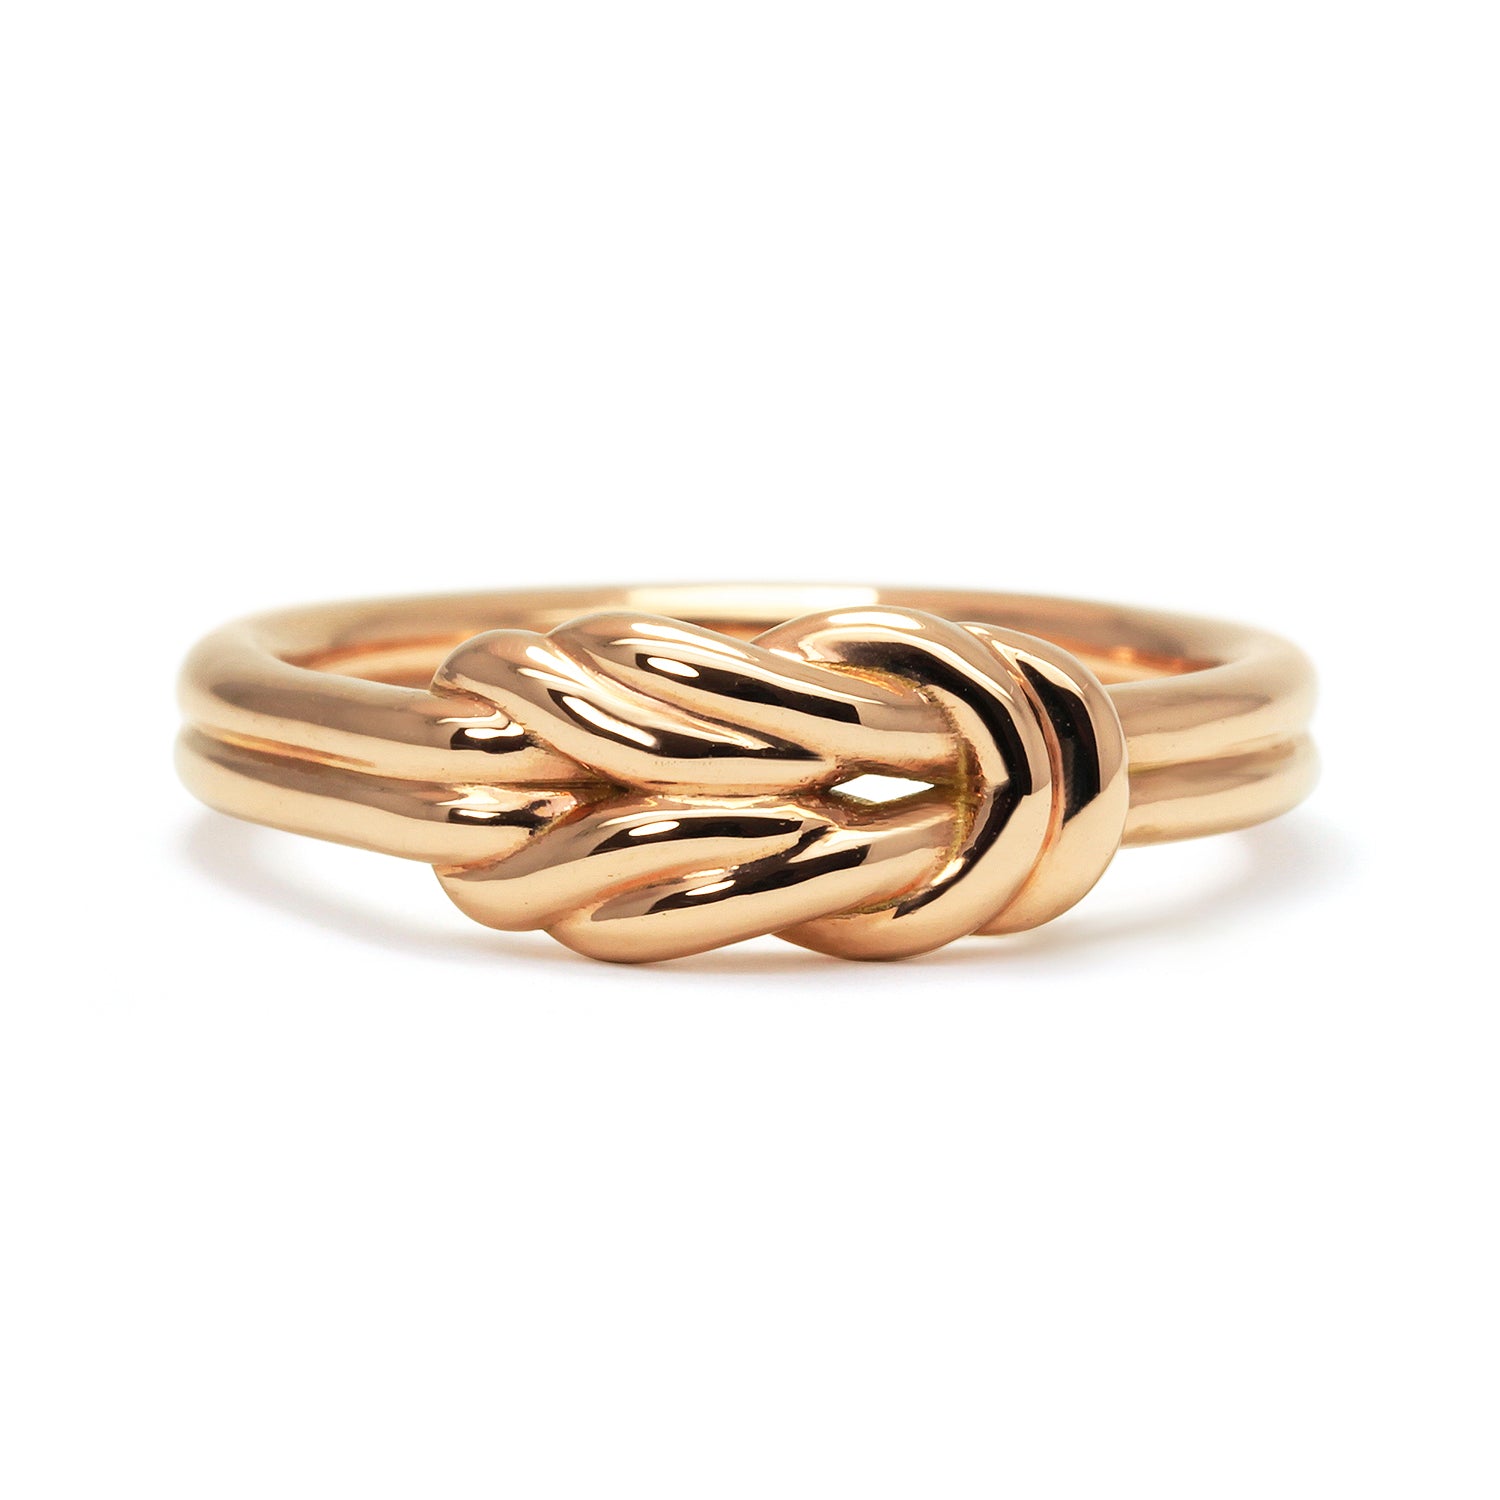 Bespoke Erin Lover's Knot Wedding Ring, Ethical Gold